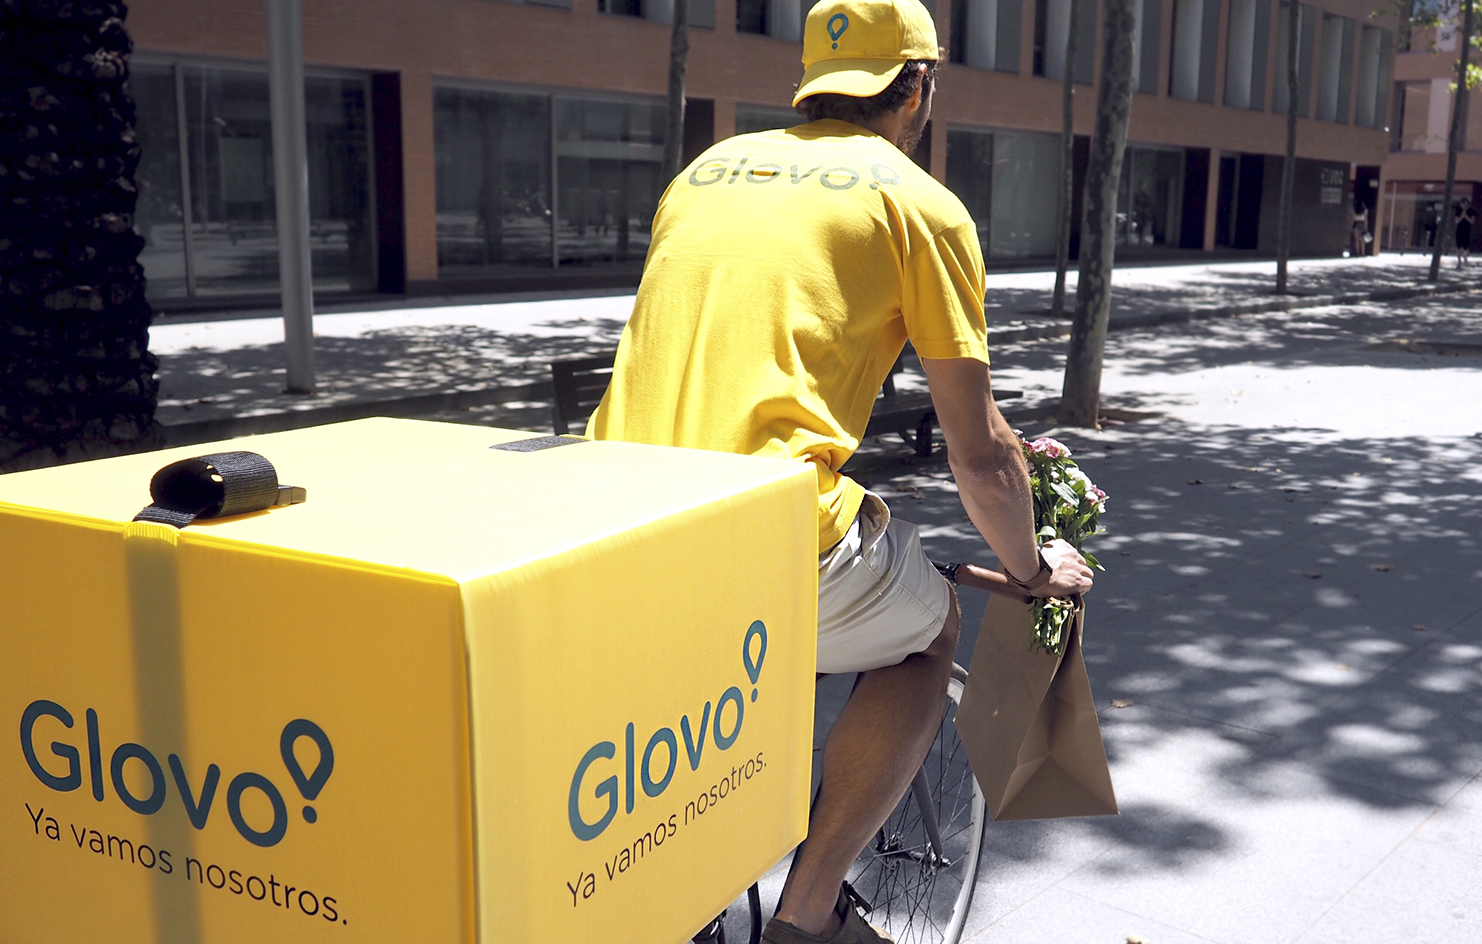 Glovo empieza a ofrecer su servicio de distribución de paquetes en Argentina